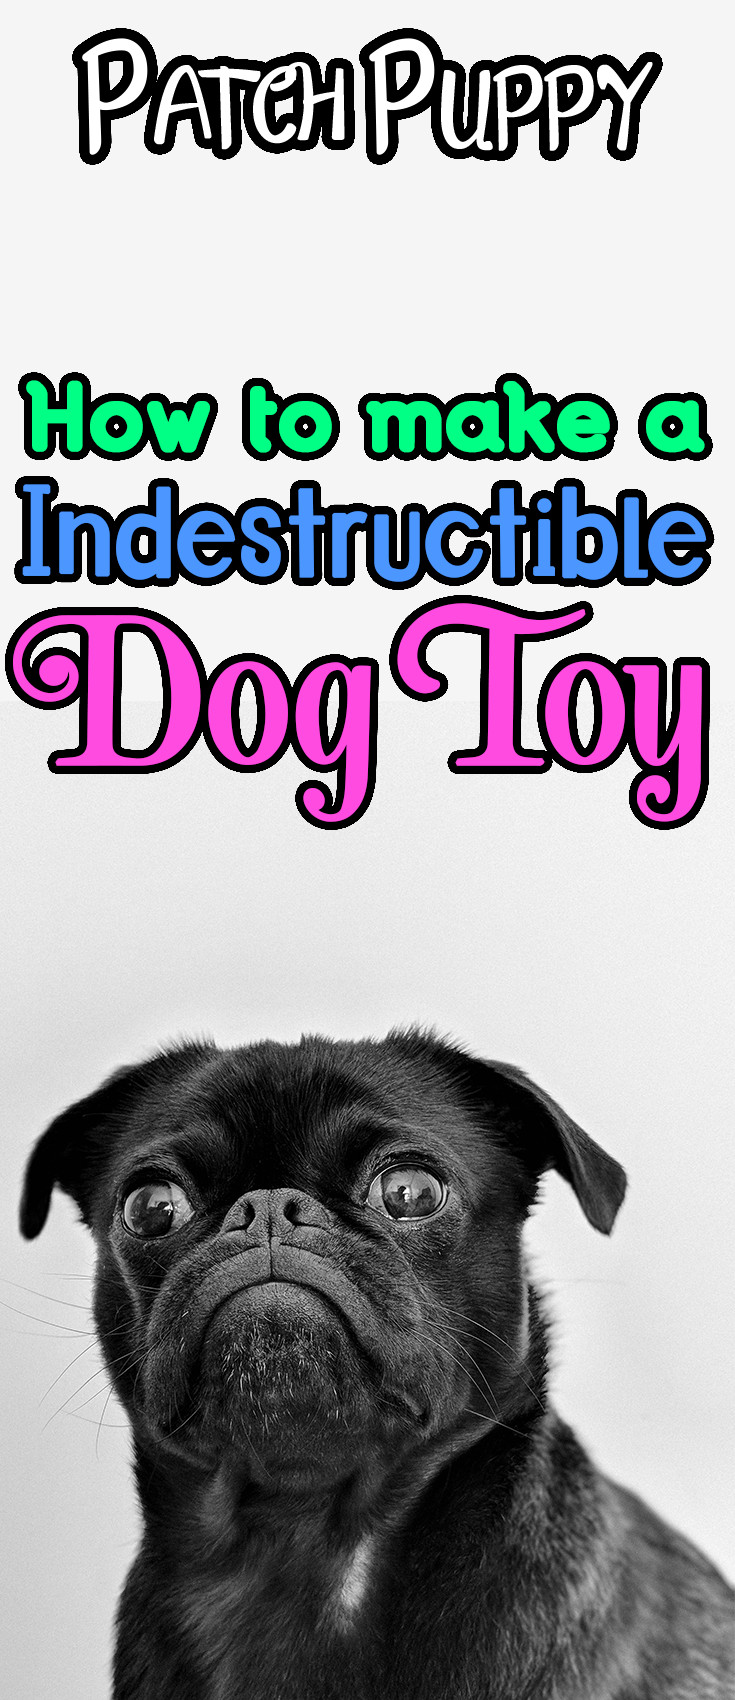 DIY Indestructible Dog Toy
 Sweet Potato Dog Treats on a Rope DIY Indestructible Dog